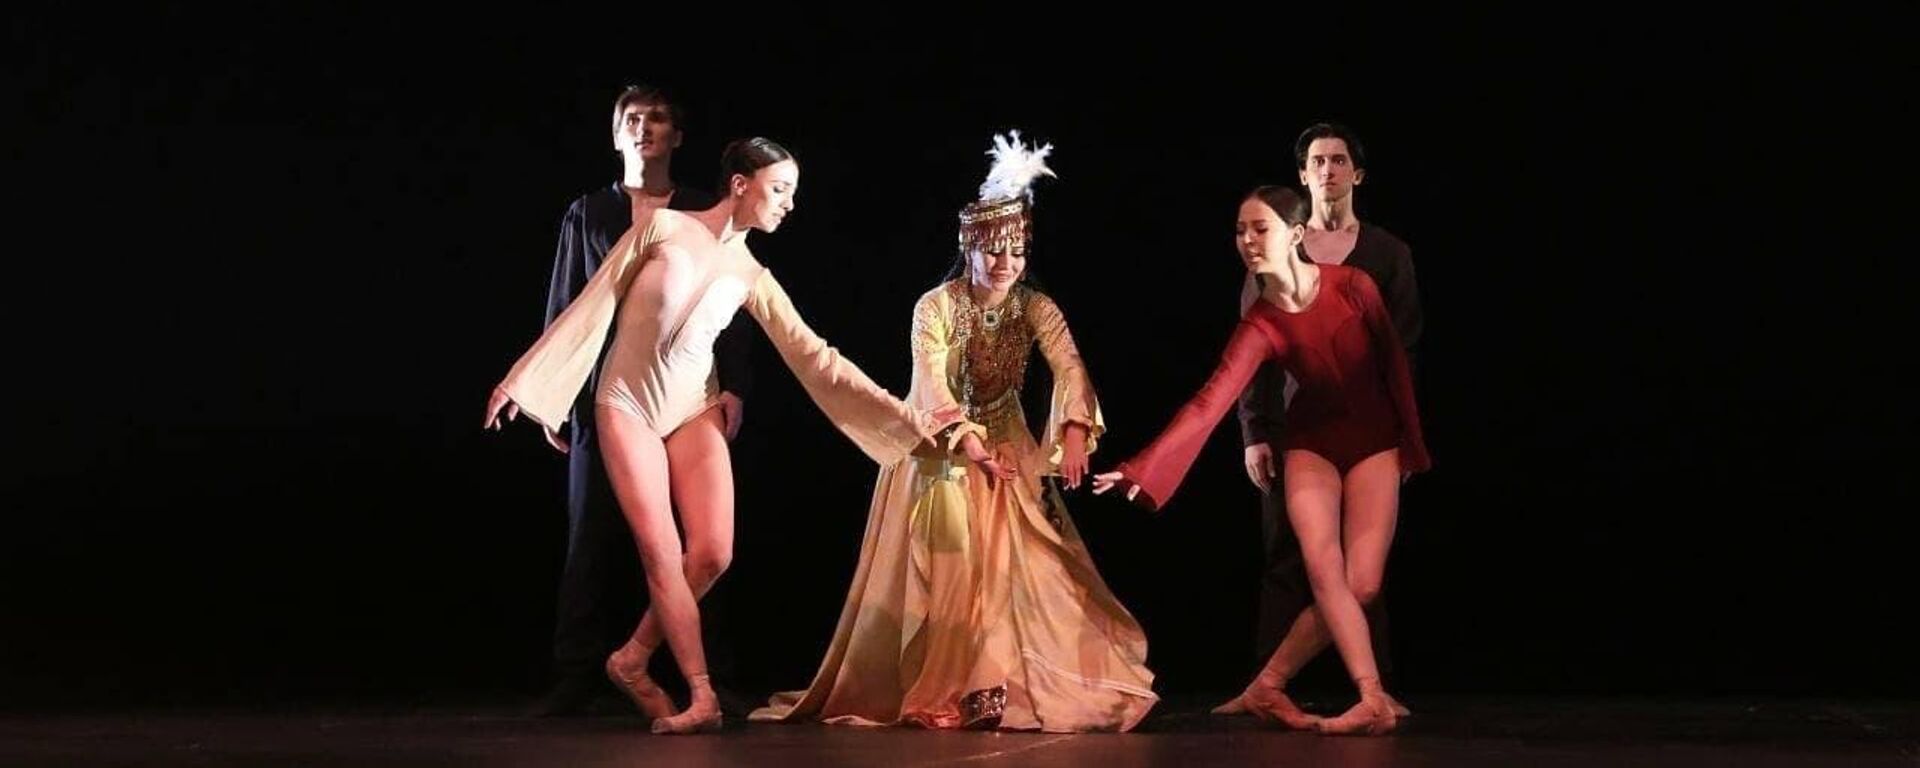 В нескольких городах России состоится постановка балета Лазги — танец души и любви - Sputnik Узбекистан, 1920, 08.10.2021